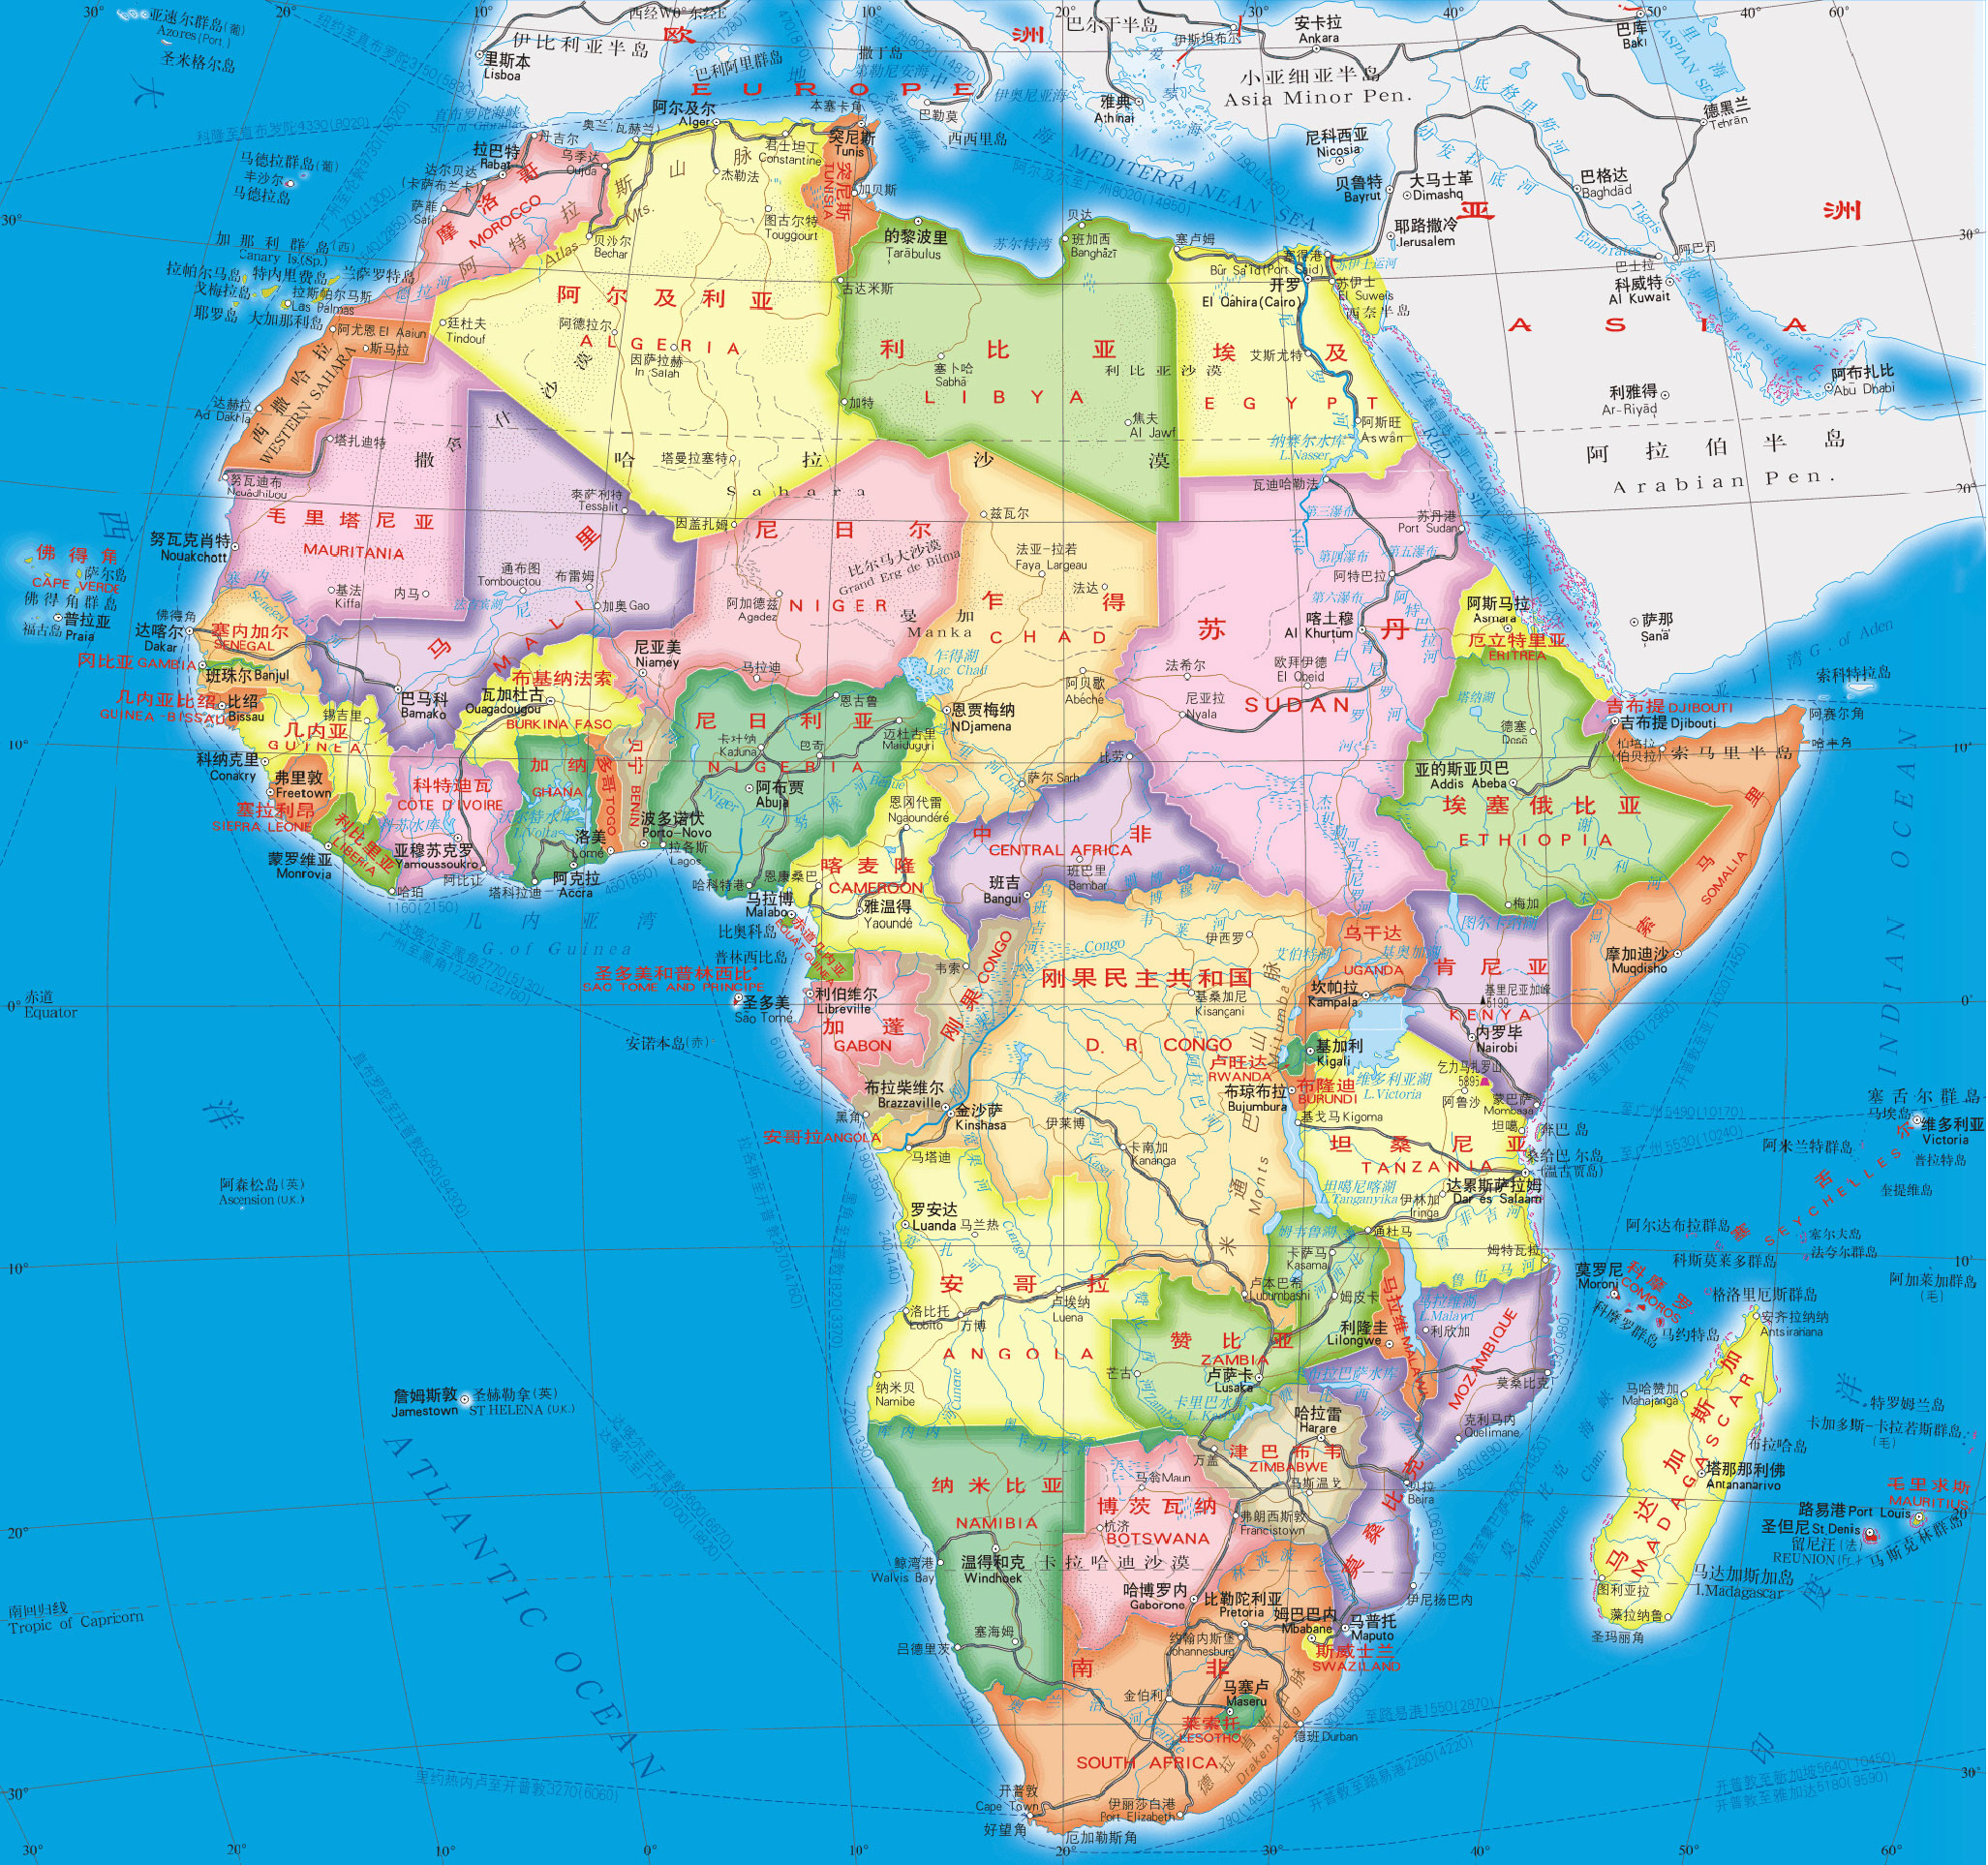 非洲亚洲全称为亚细亚,意思为太阳东升之地,也可以说是东方,这很